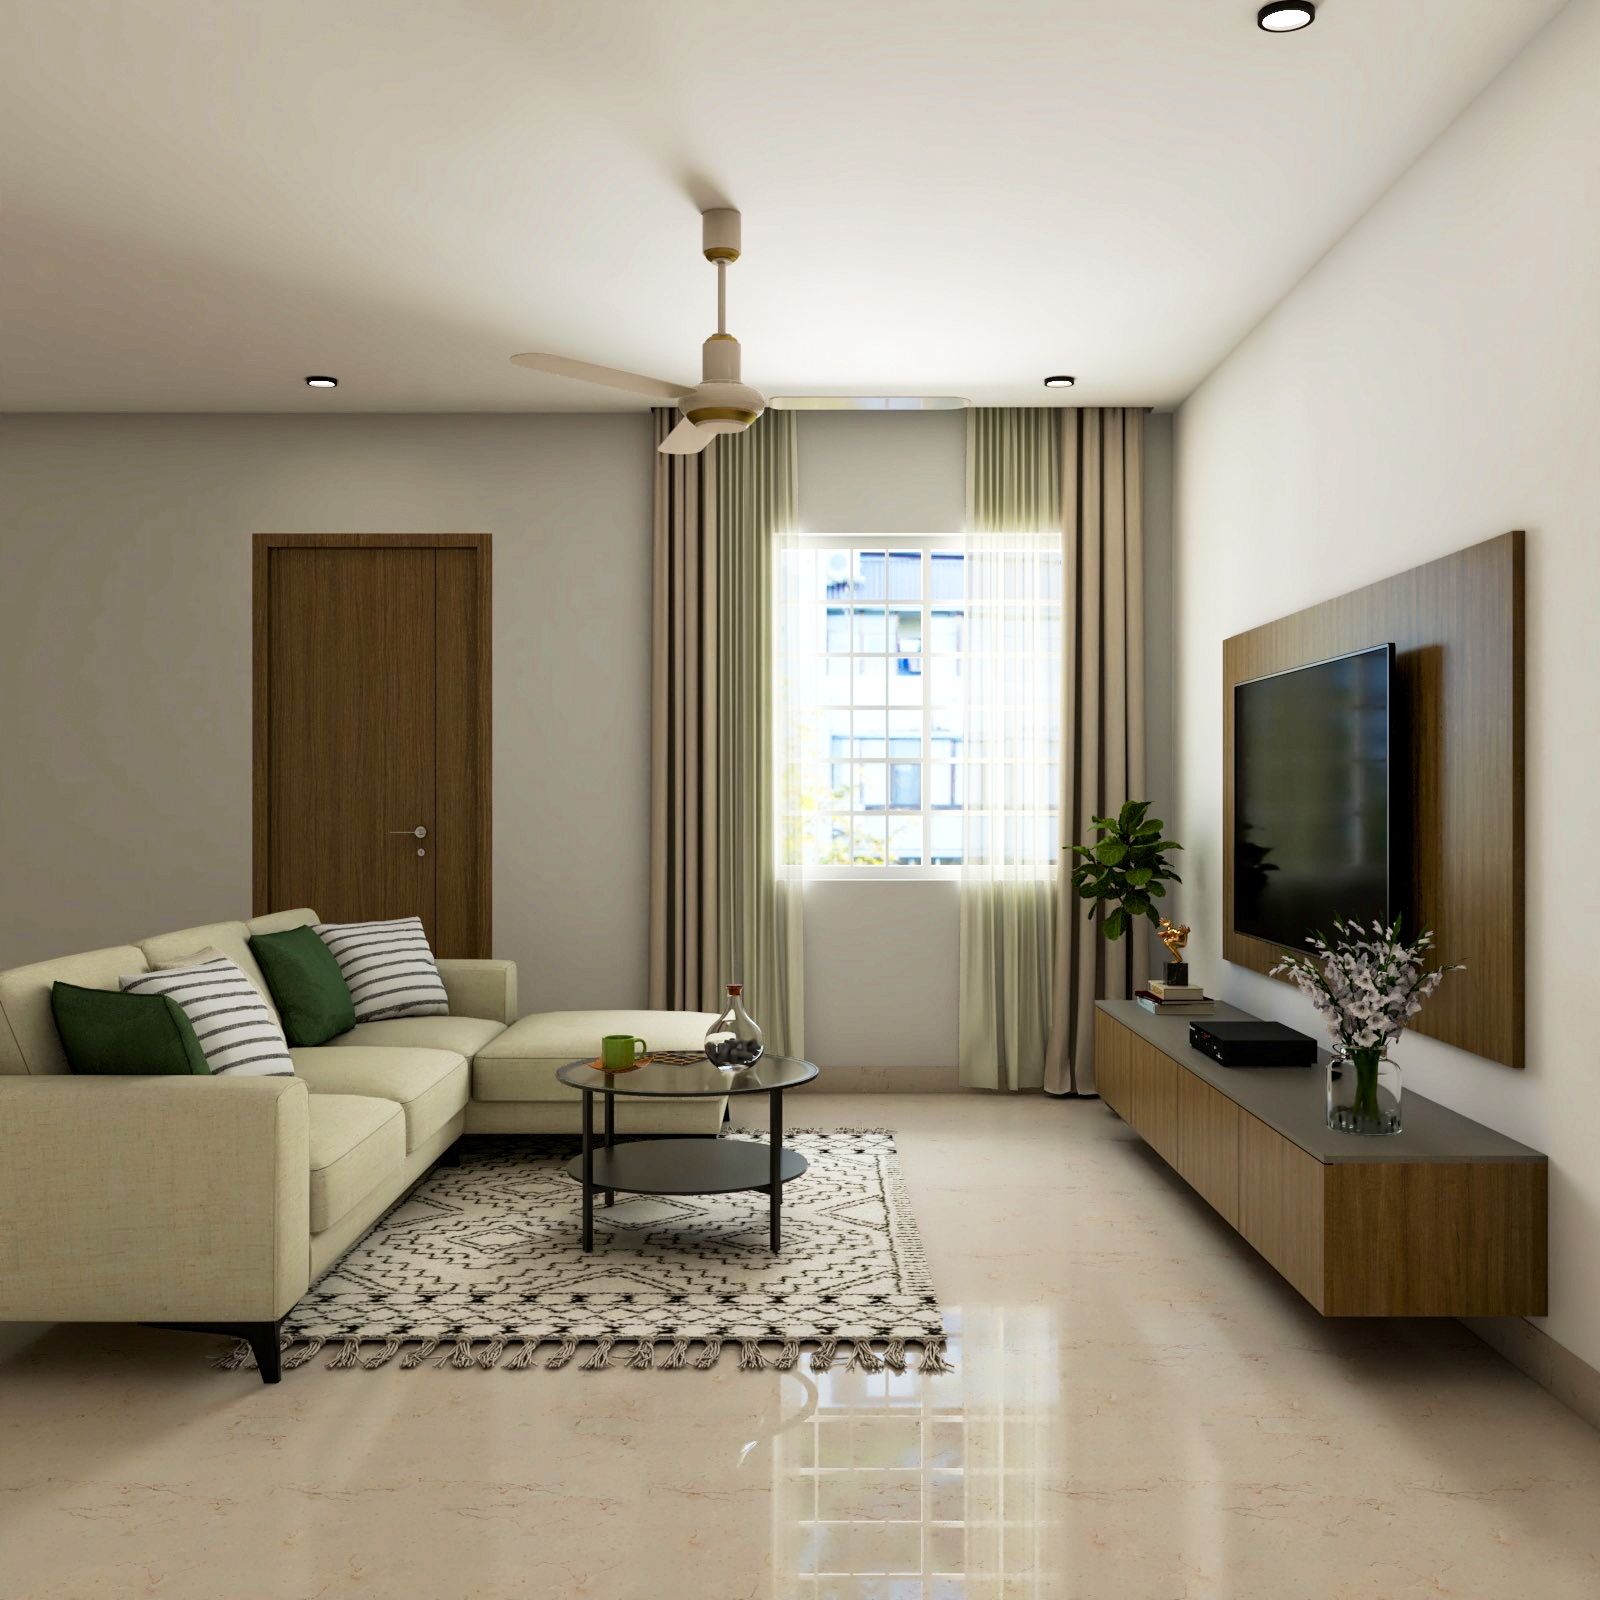 living room design | hdb living room interior design ideas in